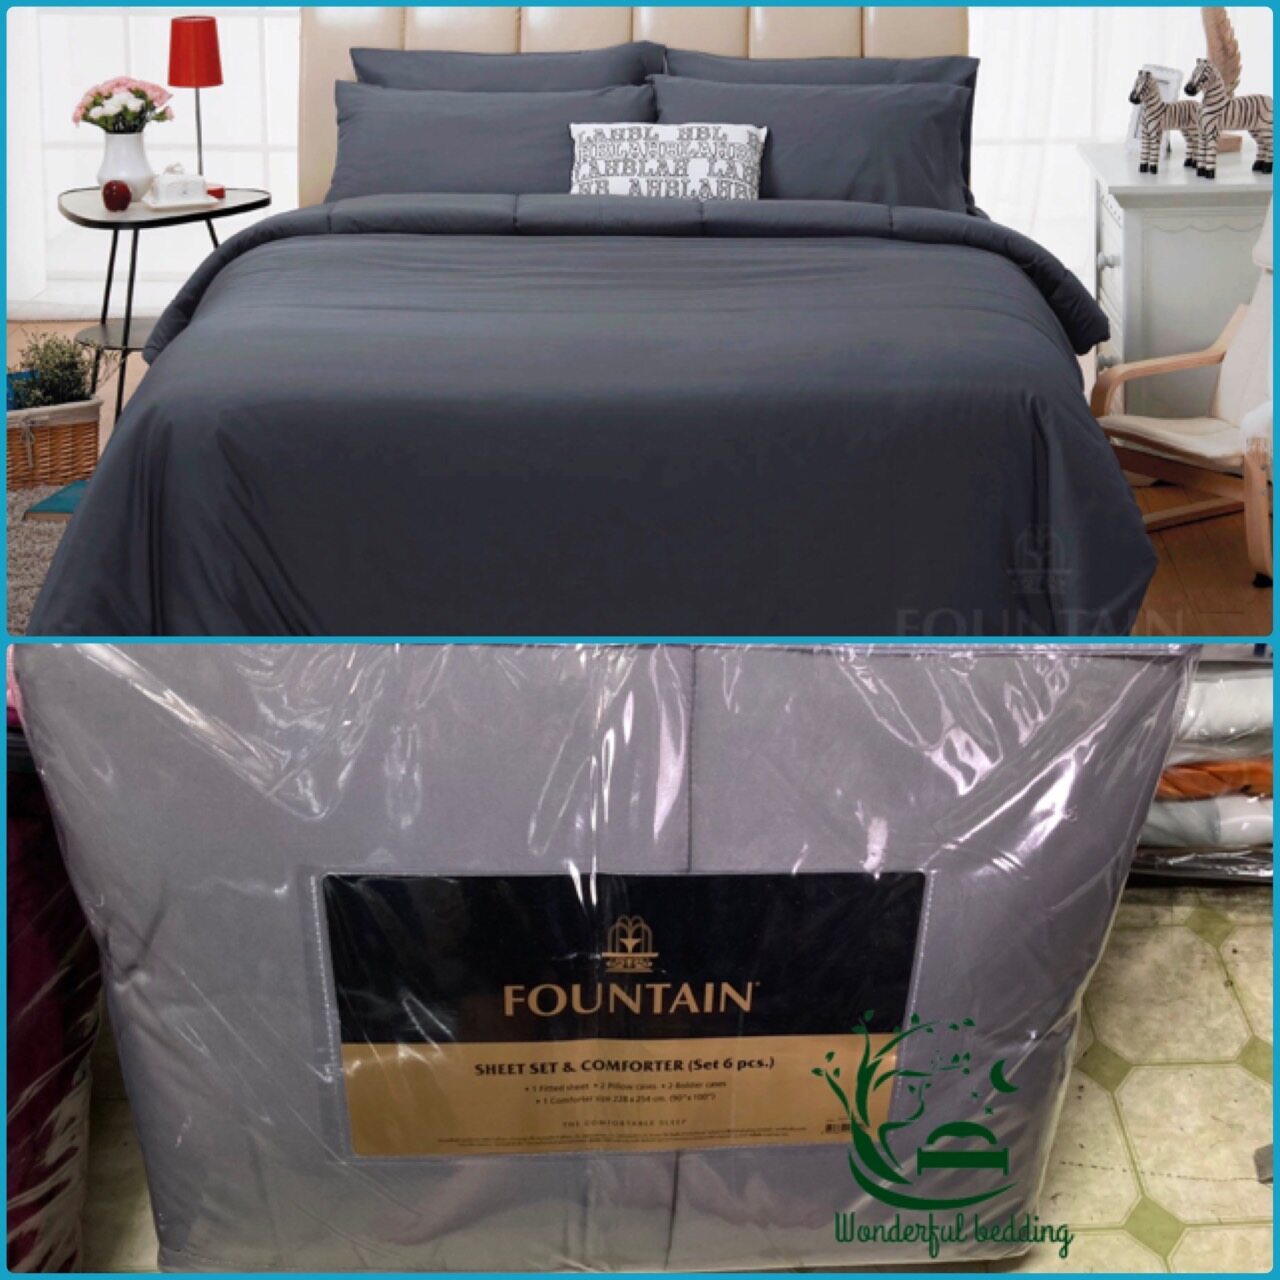 FOUNTAIN ผ้านวม + ชุดผ้าปู ผ้าปู ที่นอน แท้ 100% FTC สีพื้น เขียว Green Gray เทา ขนาด 3.5 5 6ฟุต ชุดเครื่องนอน ผ้านวม ผ้าปูที่นอน wonderful bedding  สี → Grayขนาดสินค้า 5 ฟุต